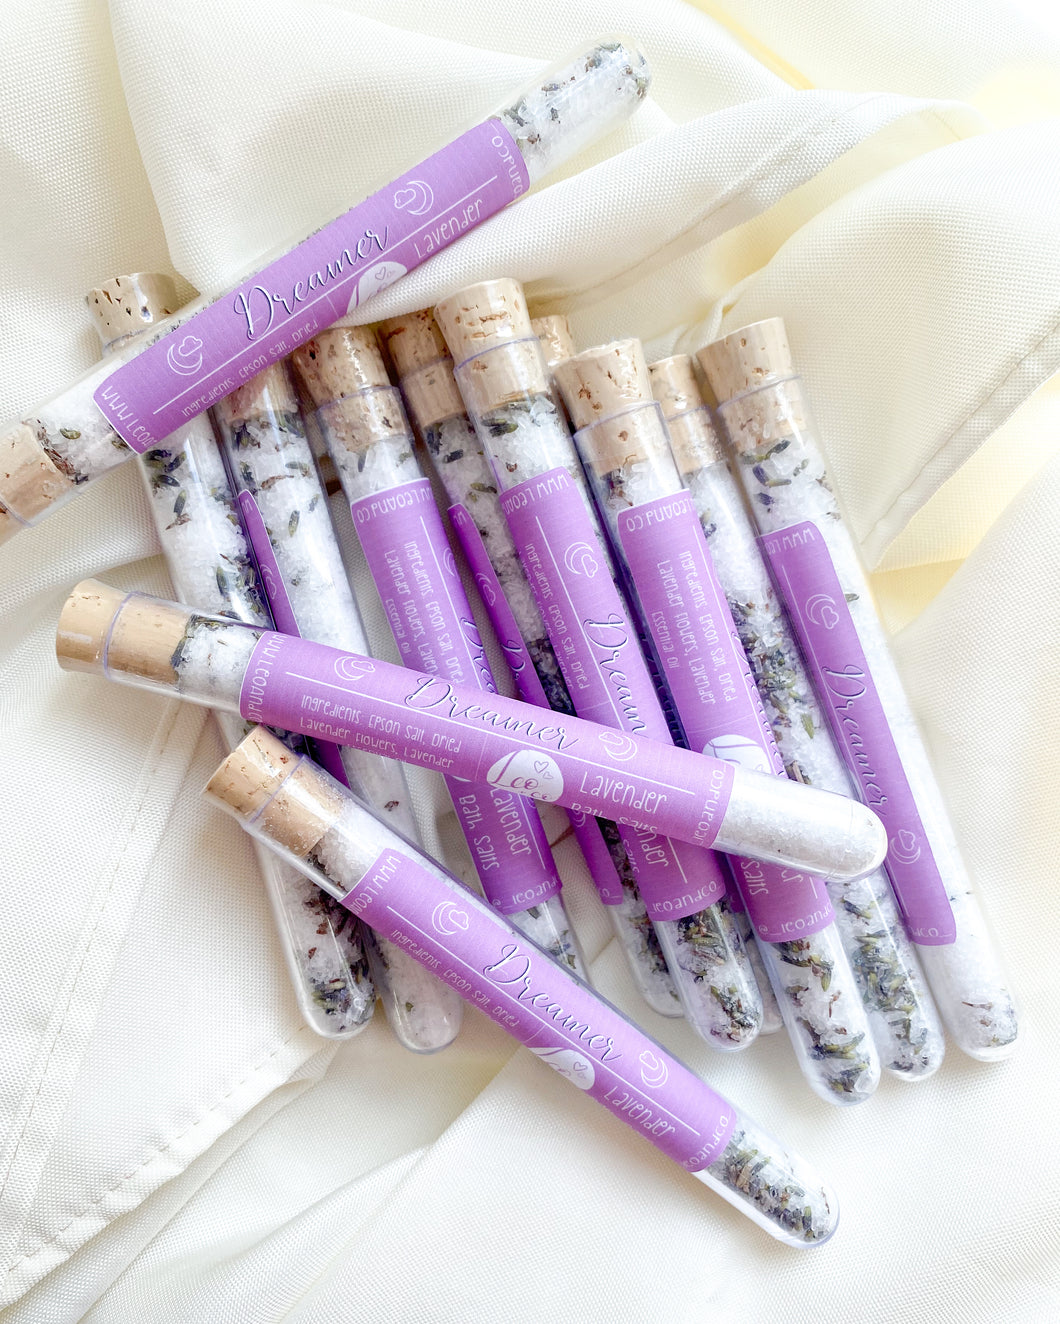 DREAMER Lavender Bath Salt Test Tube